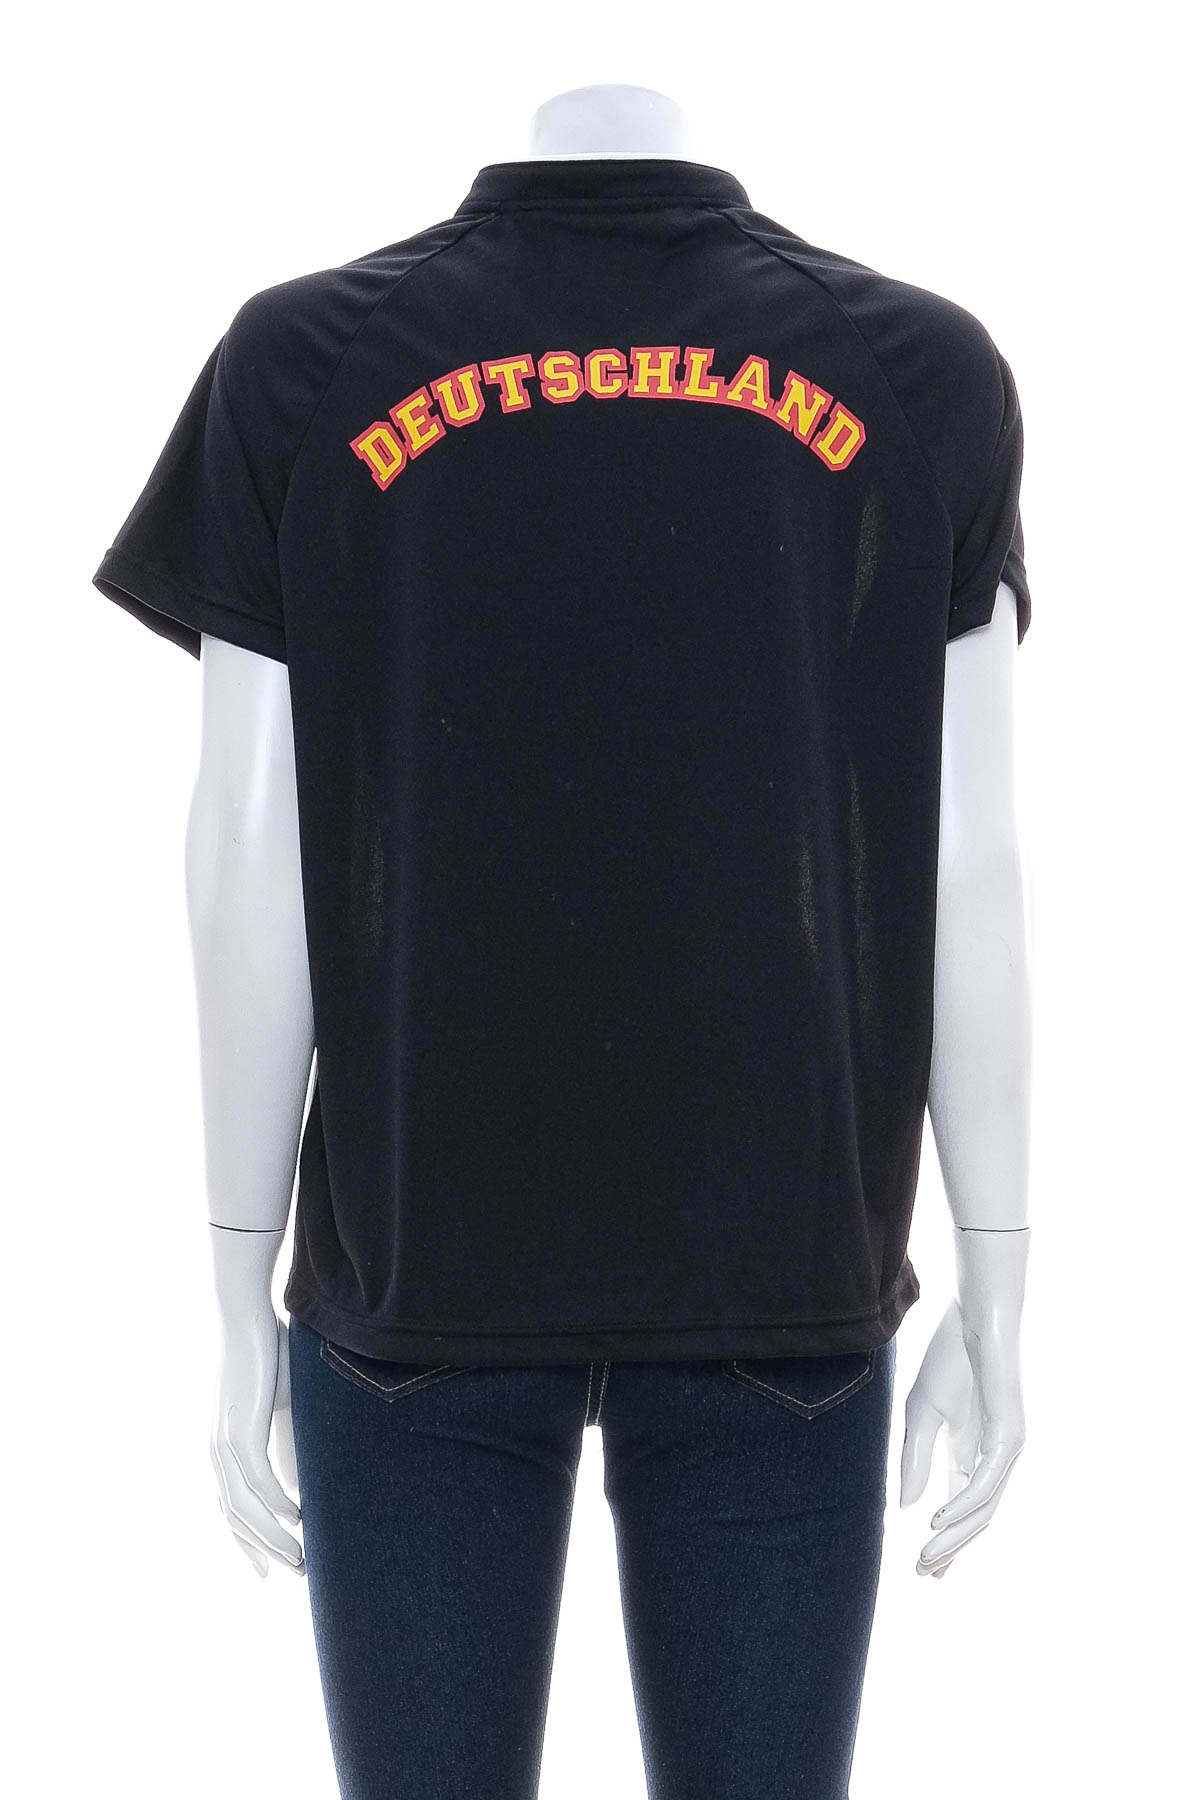 Women's t-shirt - DFB - 1